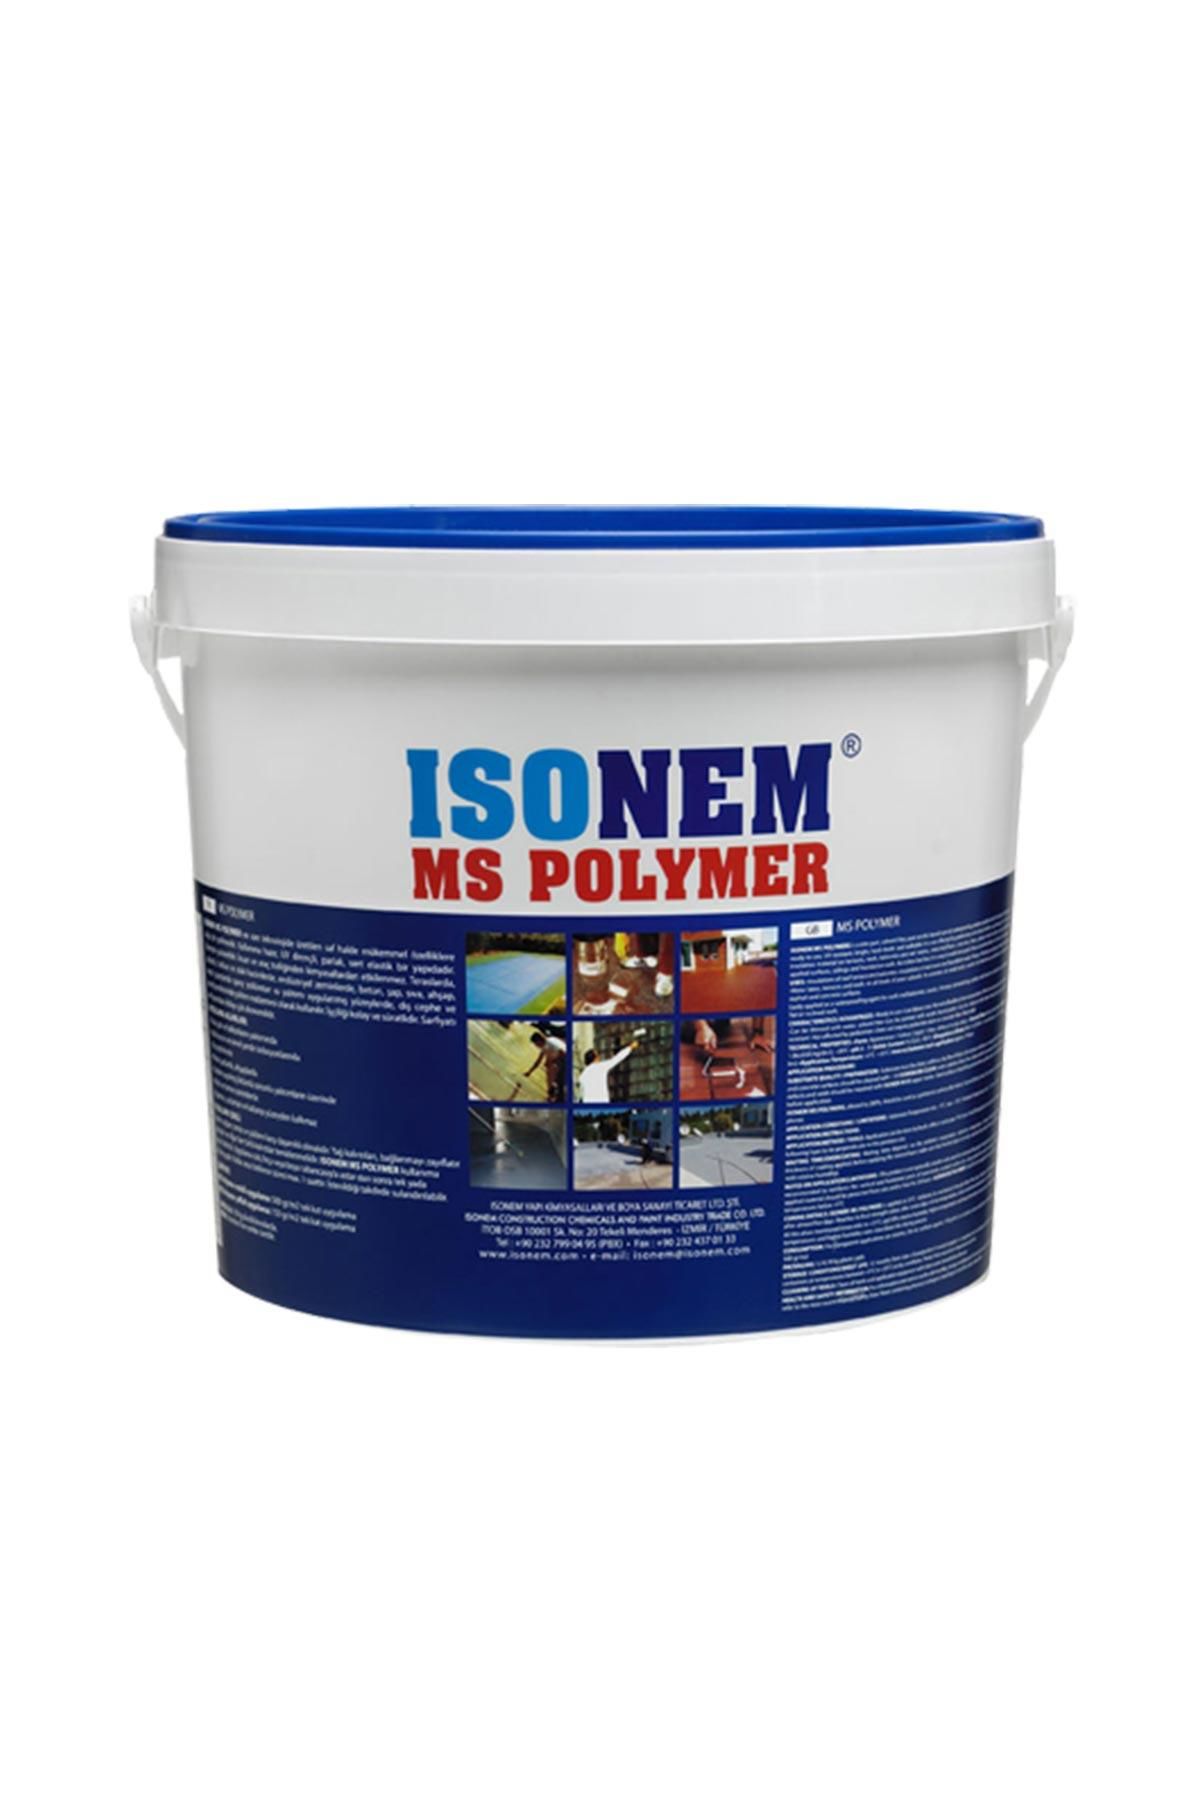 Isonem Ms Polymer Şeffaf Su Yalıtım Ürünü 18 kg